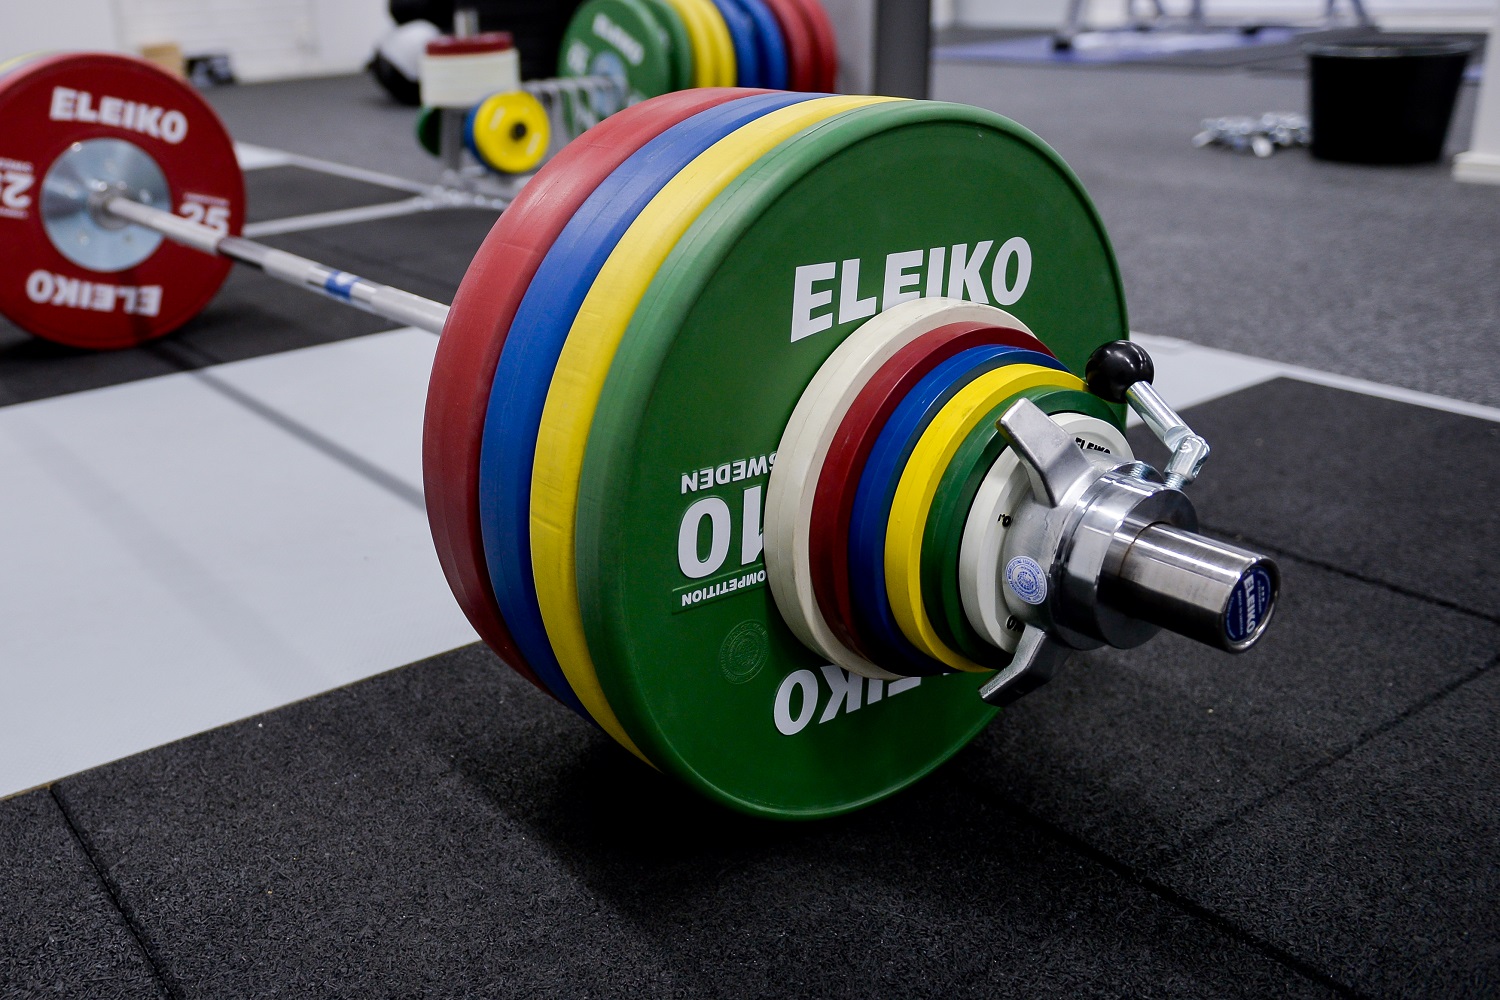 Бренд Eleiko станет поставщиком оборудования для чемпионата мира по тяжелой атлетике